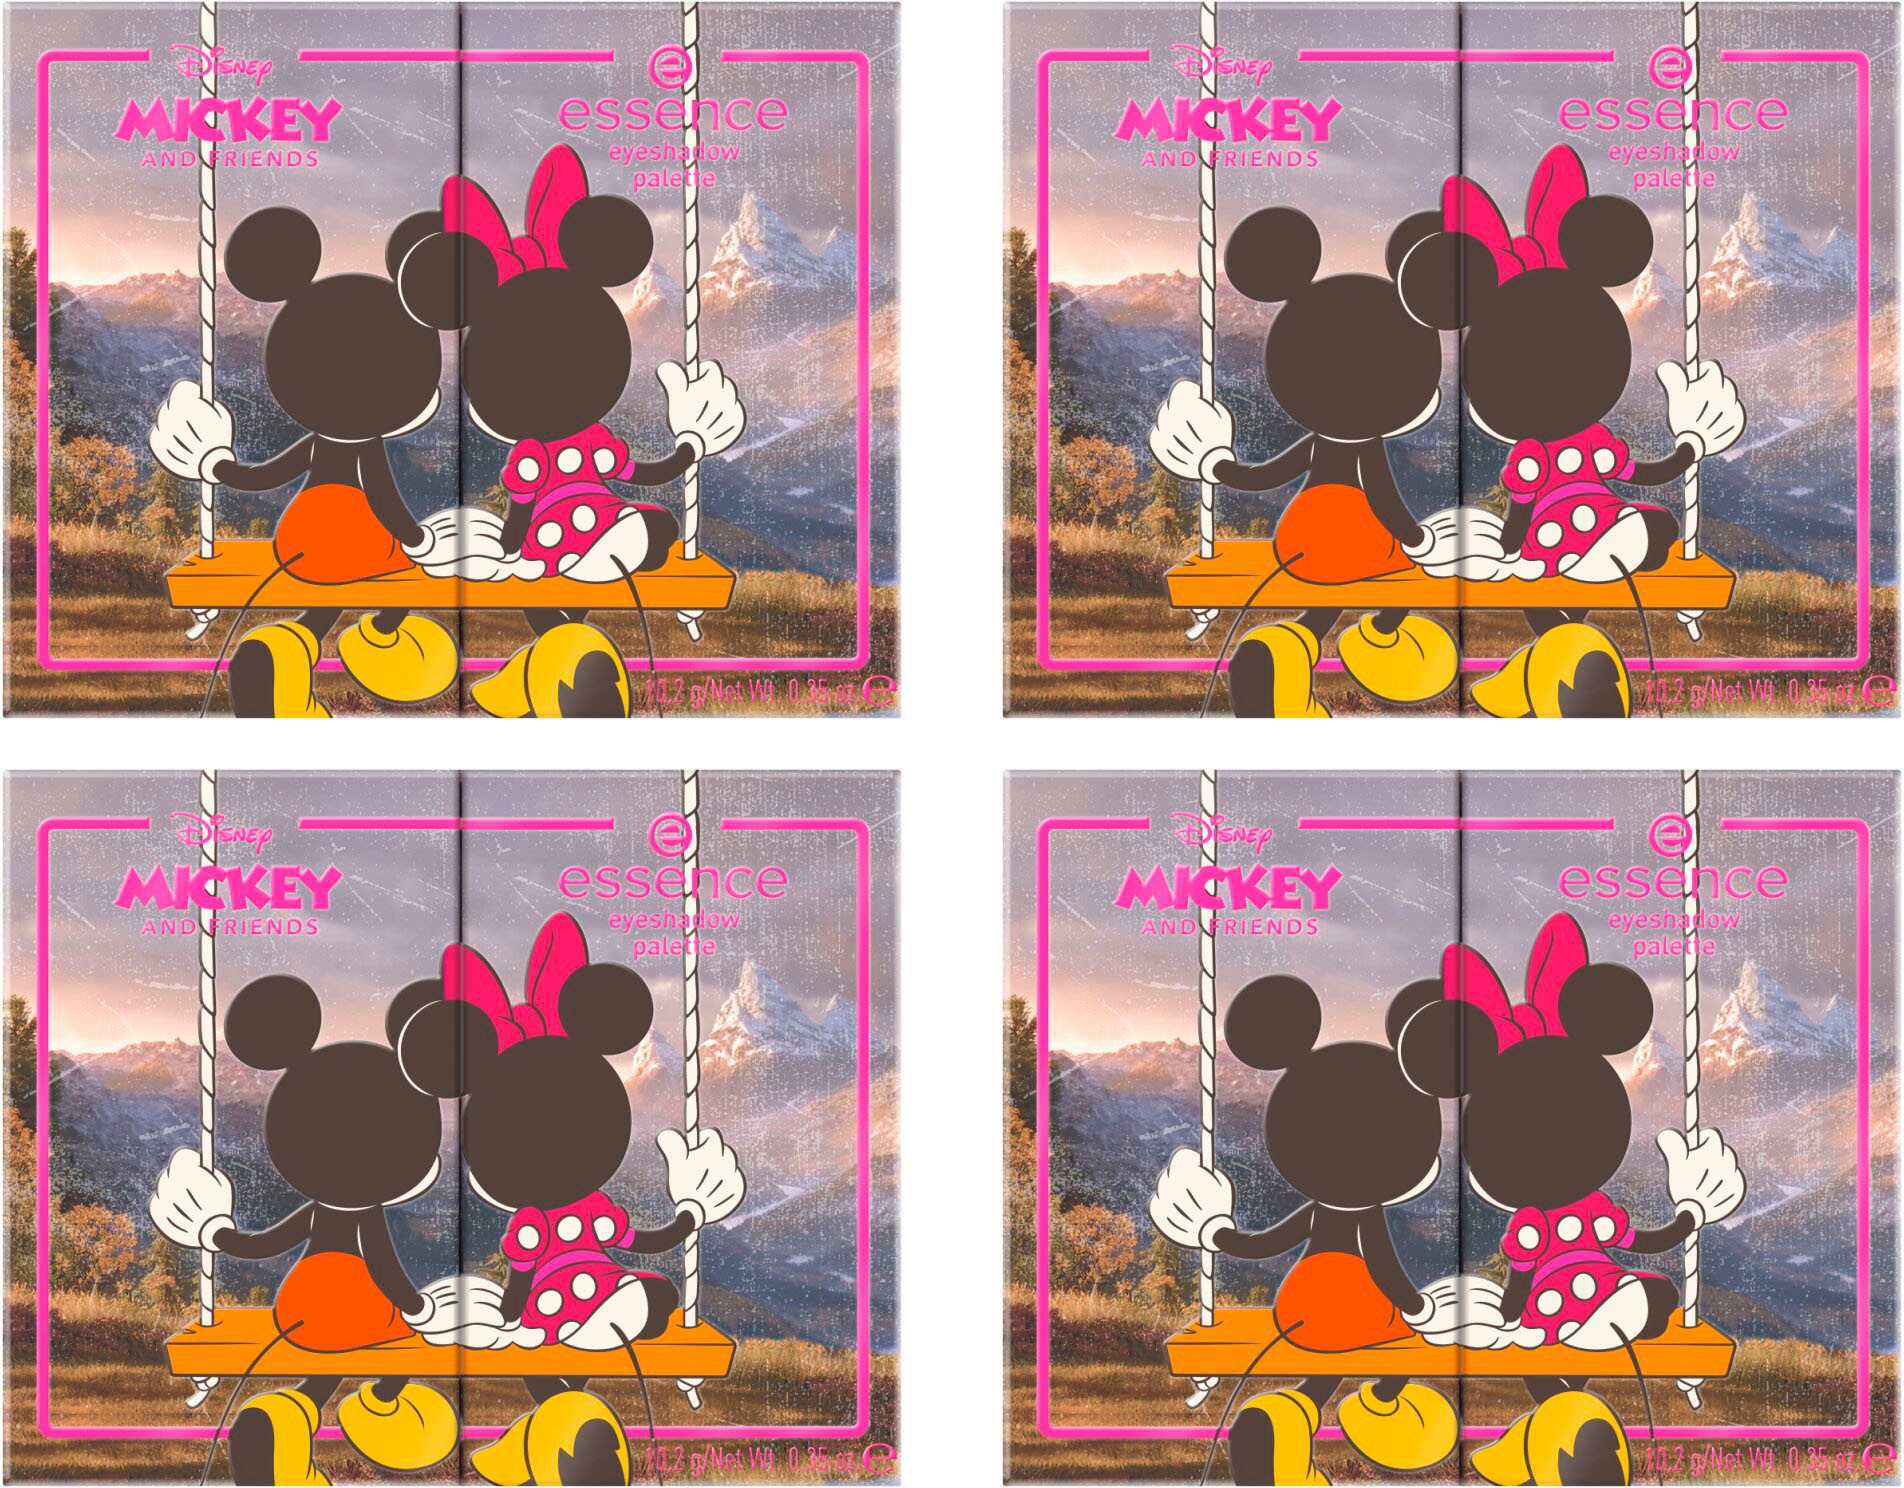 Essence Lidschatten-Palette »Disney Mickey and Friends eyeshadow palette«,  Augen-Make-Up für abwechslungsreiche Looks online kaufen